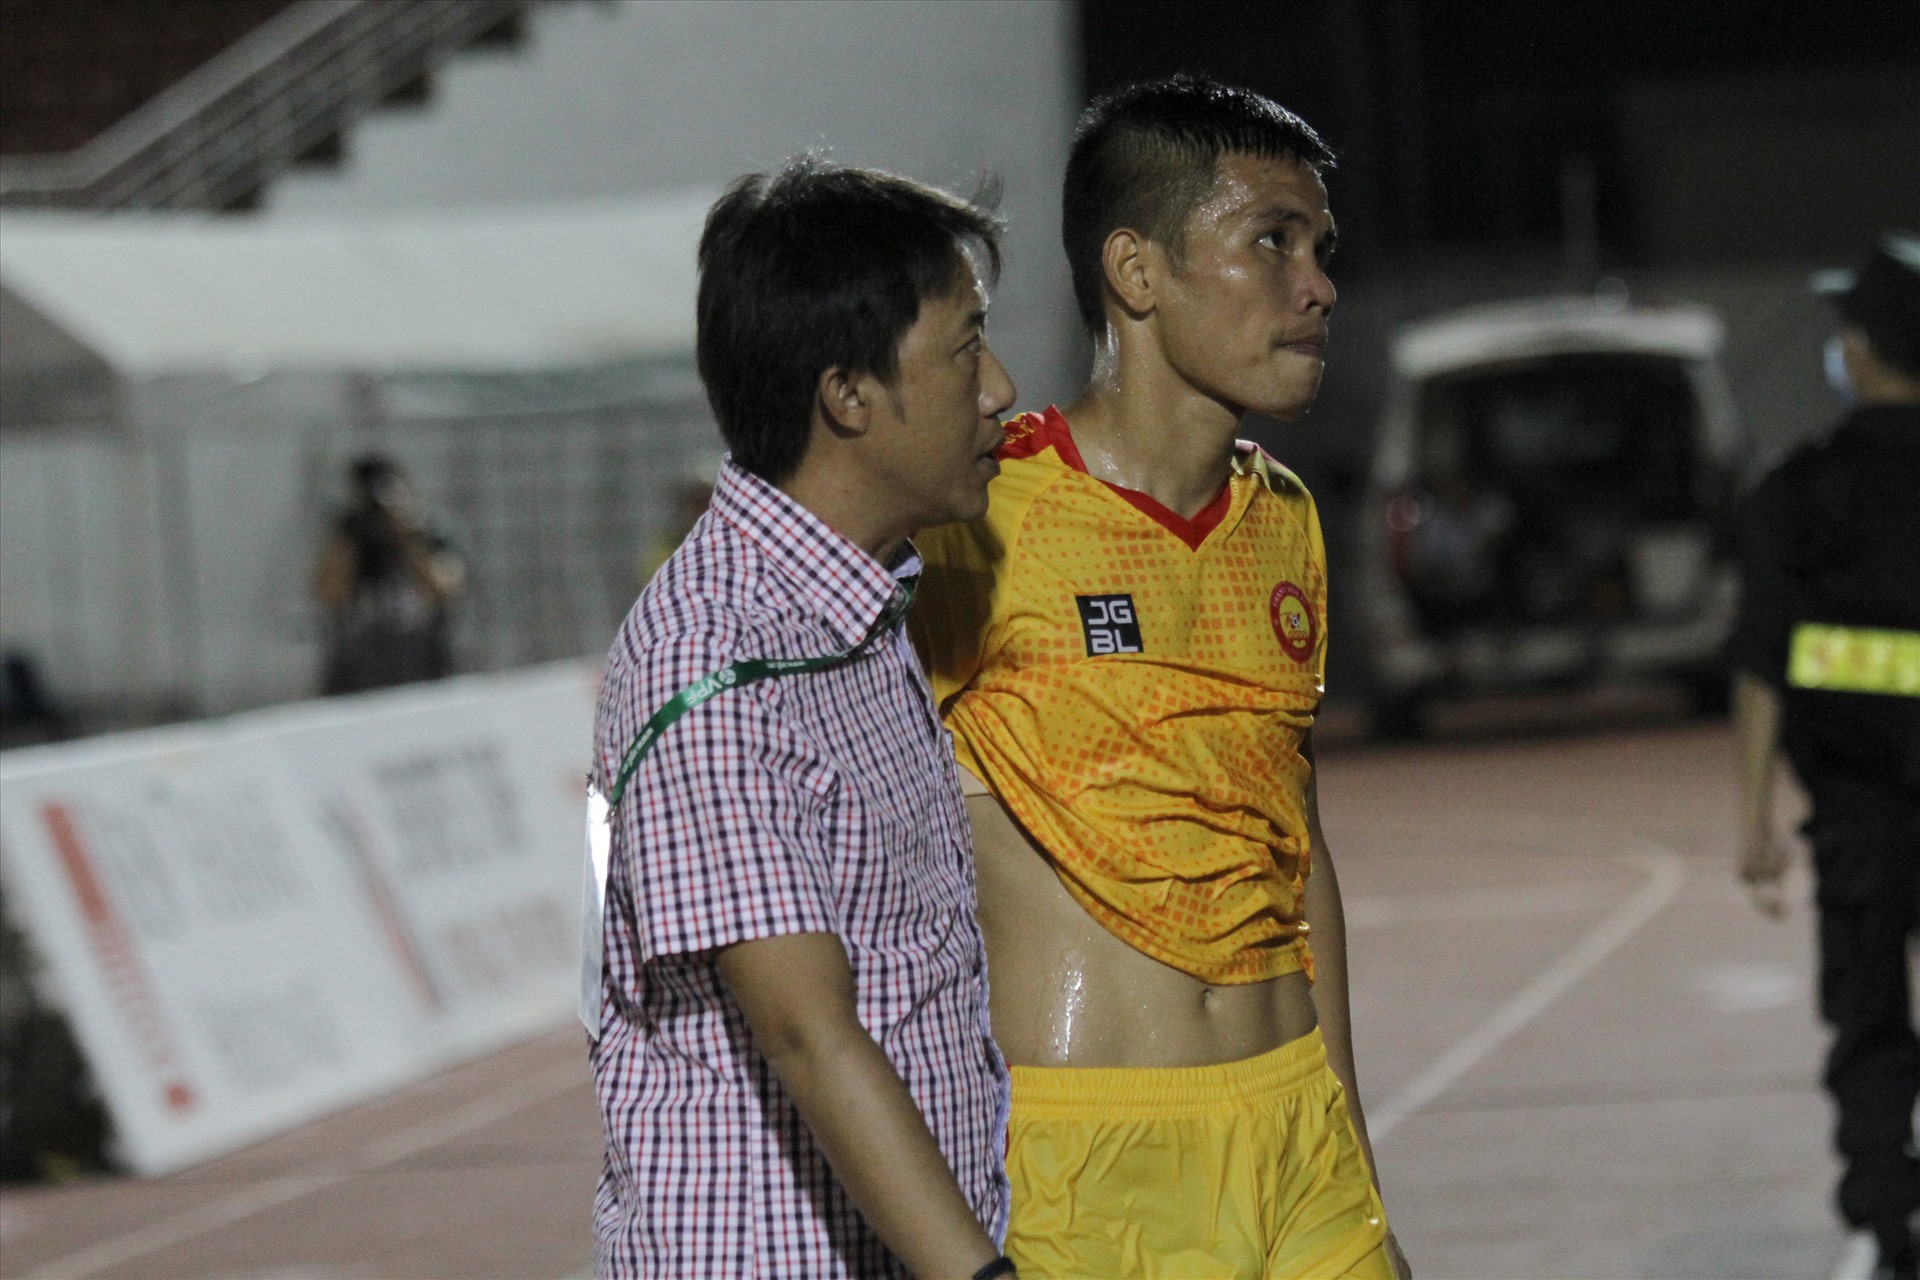 Chung cuộc, Thanh Hoá của huấn luyện viên Nguyễn Thành Công thất bại với tỷ số 0-3. Chiến thắng này giúp câu lạc bộ Sài Gọn vẫn giữ vững ngôi đầu bảng với 19 điểm sau 9 trận liên tiếp bất bại. Về phần Thanh Hoá, họ tạm thời đứng thứ 10 với 10 điểm, nhưng khoảng cách với đội cuối bảng chỉ bằng đúng 1 trận thắng.